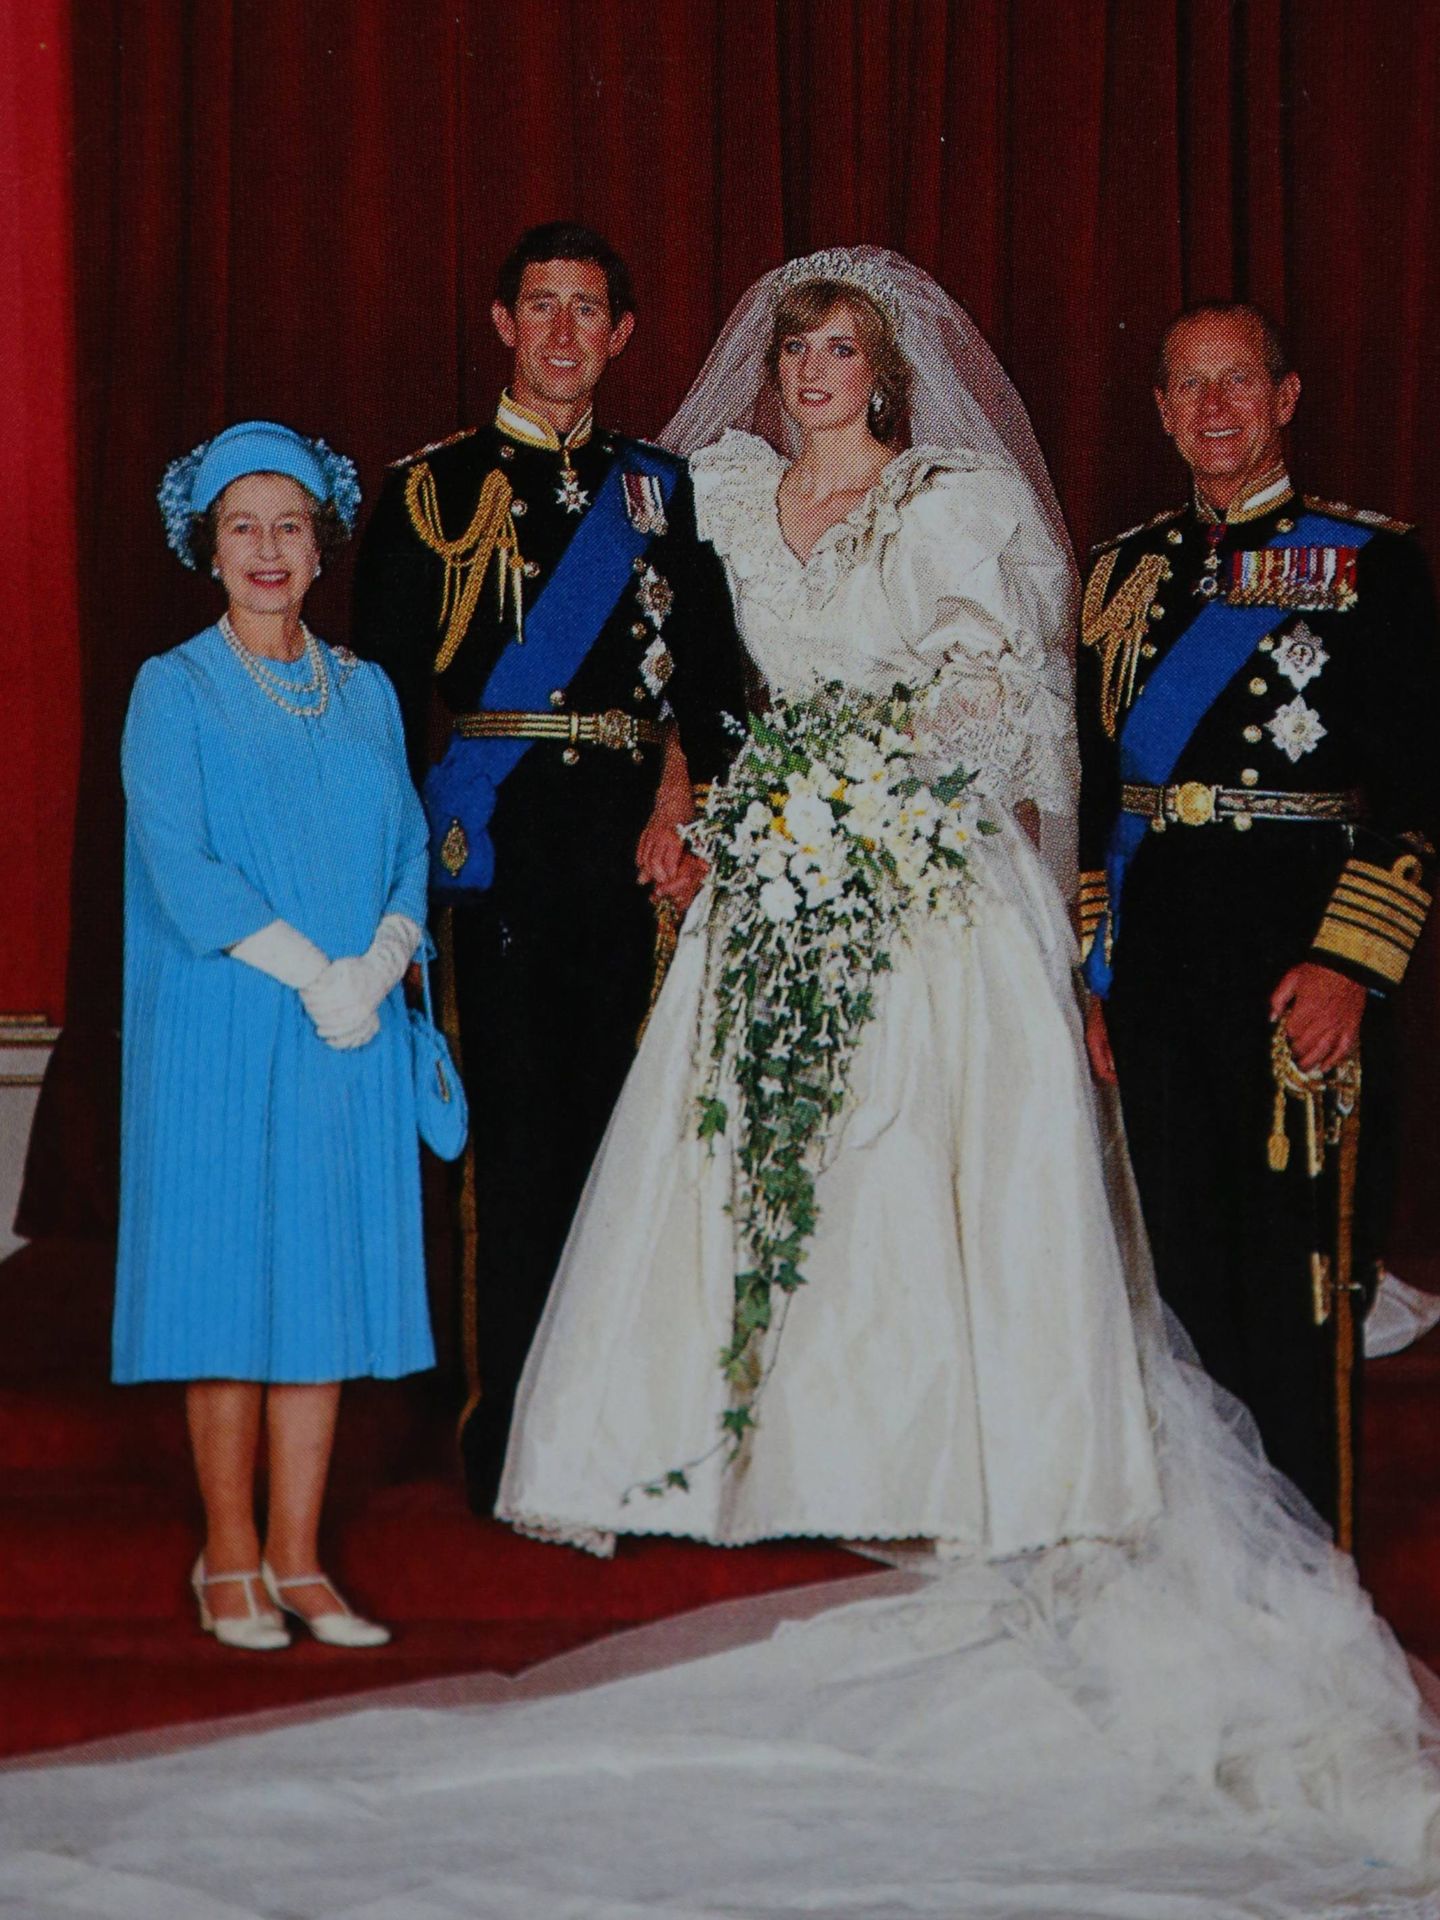 El vestido que llevó la reina Isabel en la boda de Carlos y Diana fue diseñado por Ian Thomas. (Cordon Press)